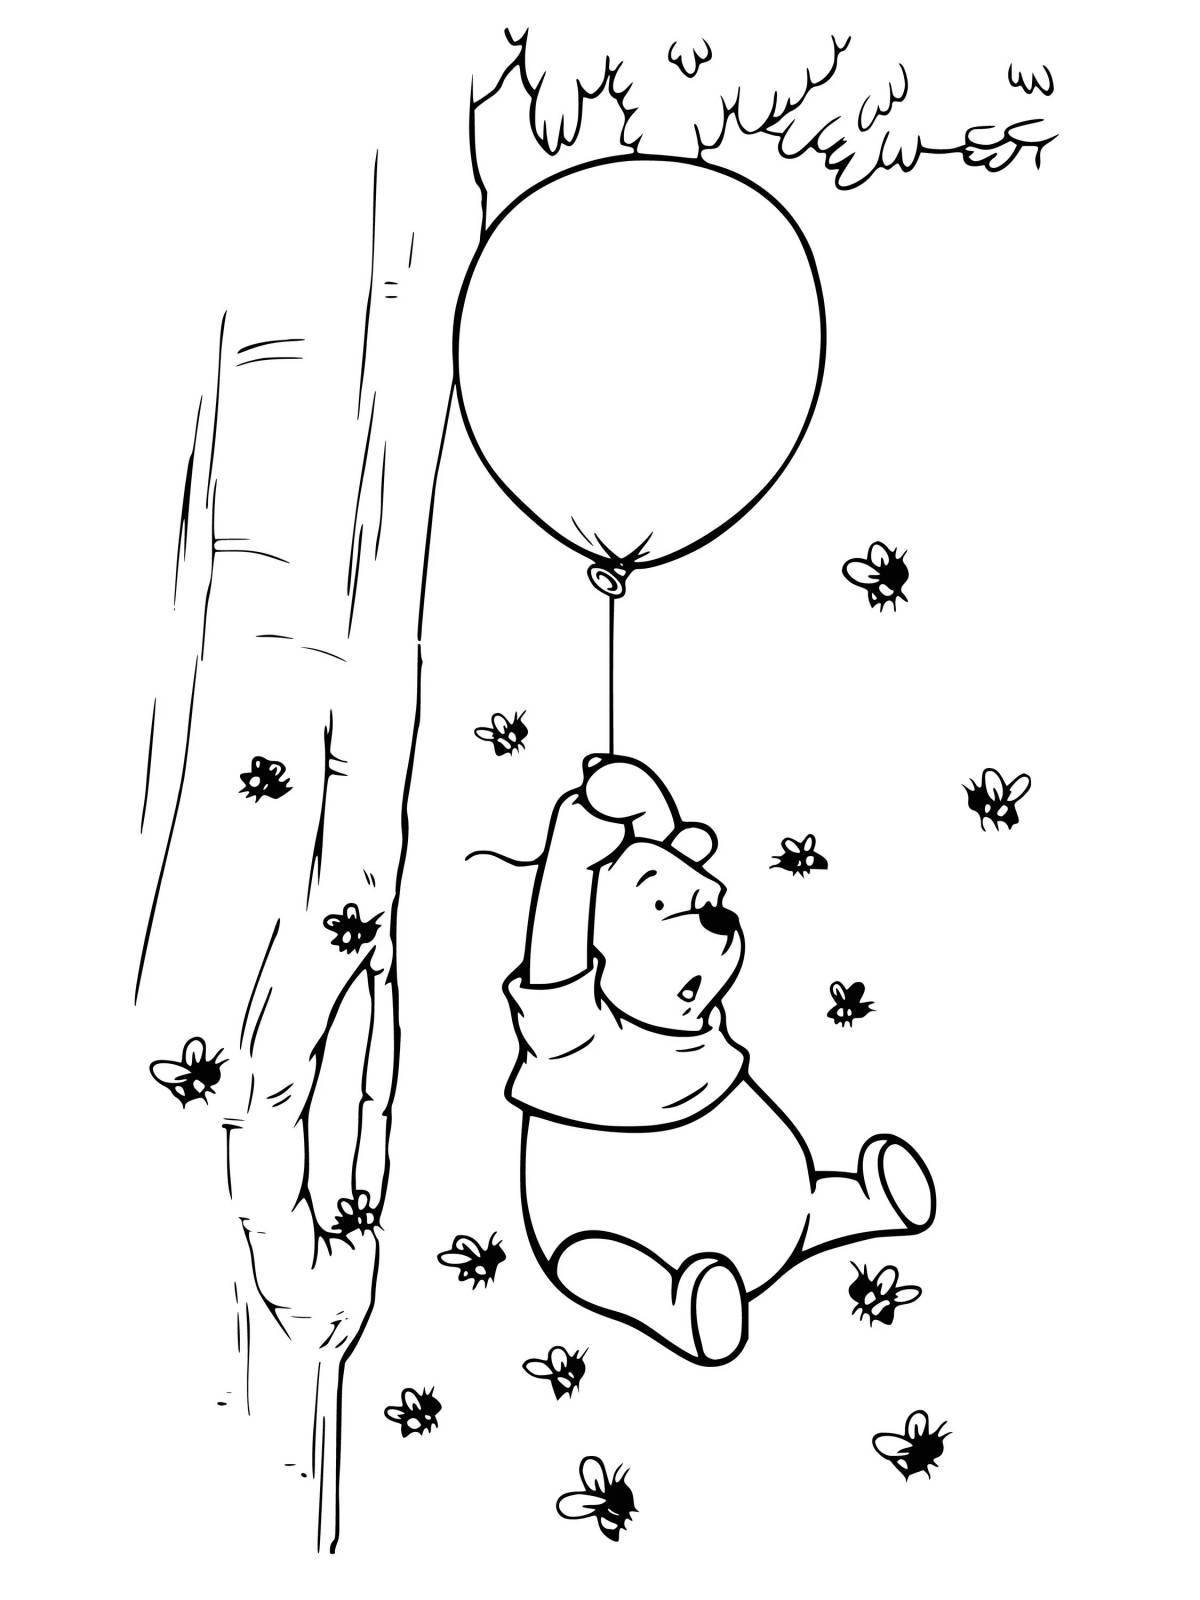 Fun Winnie the Pooh with a balloon